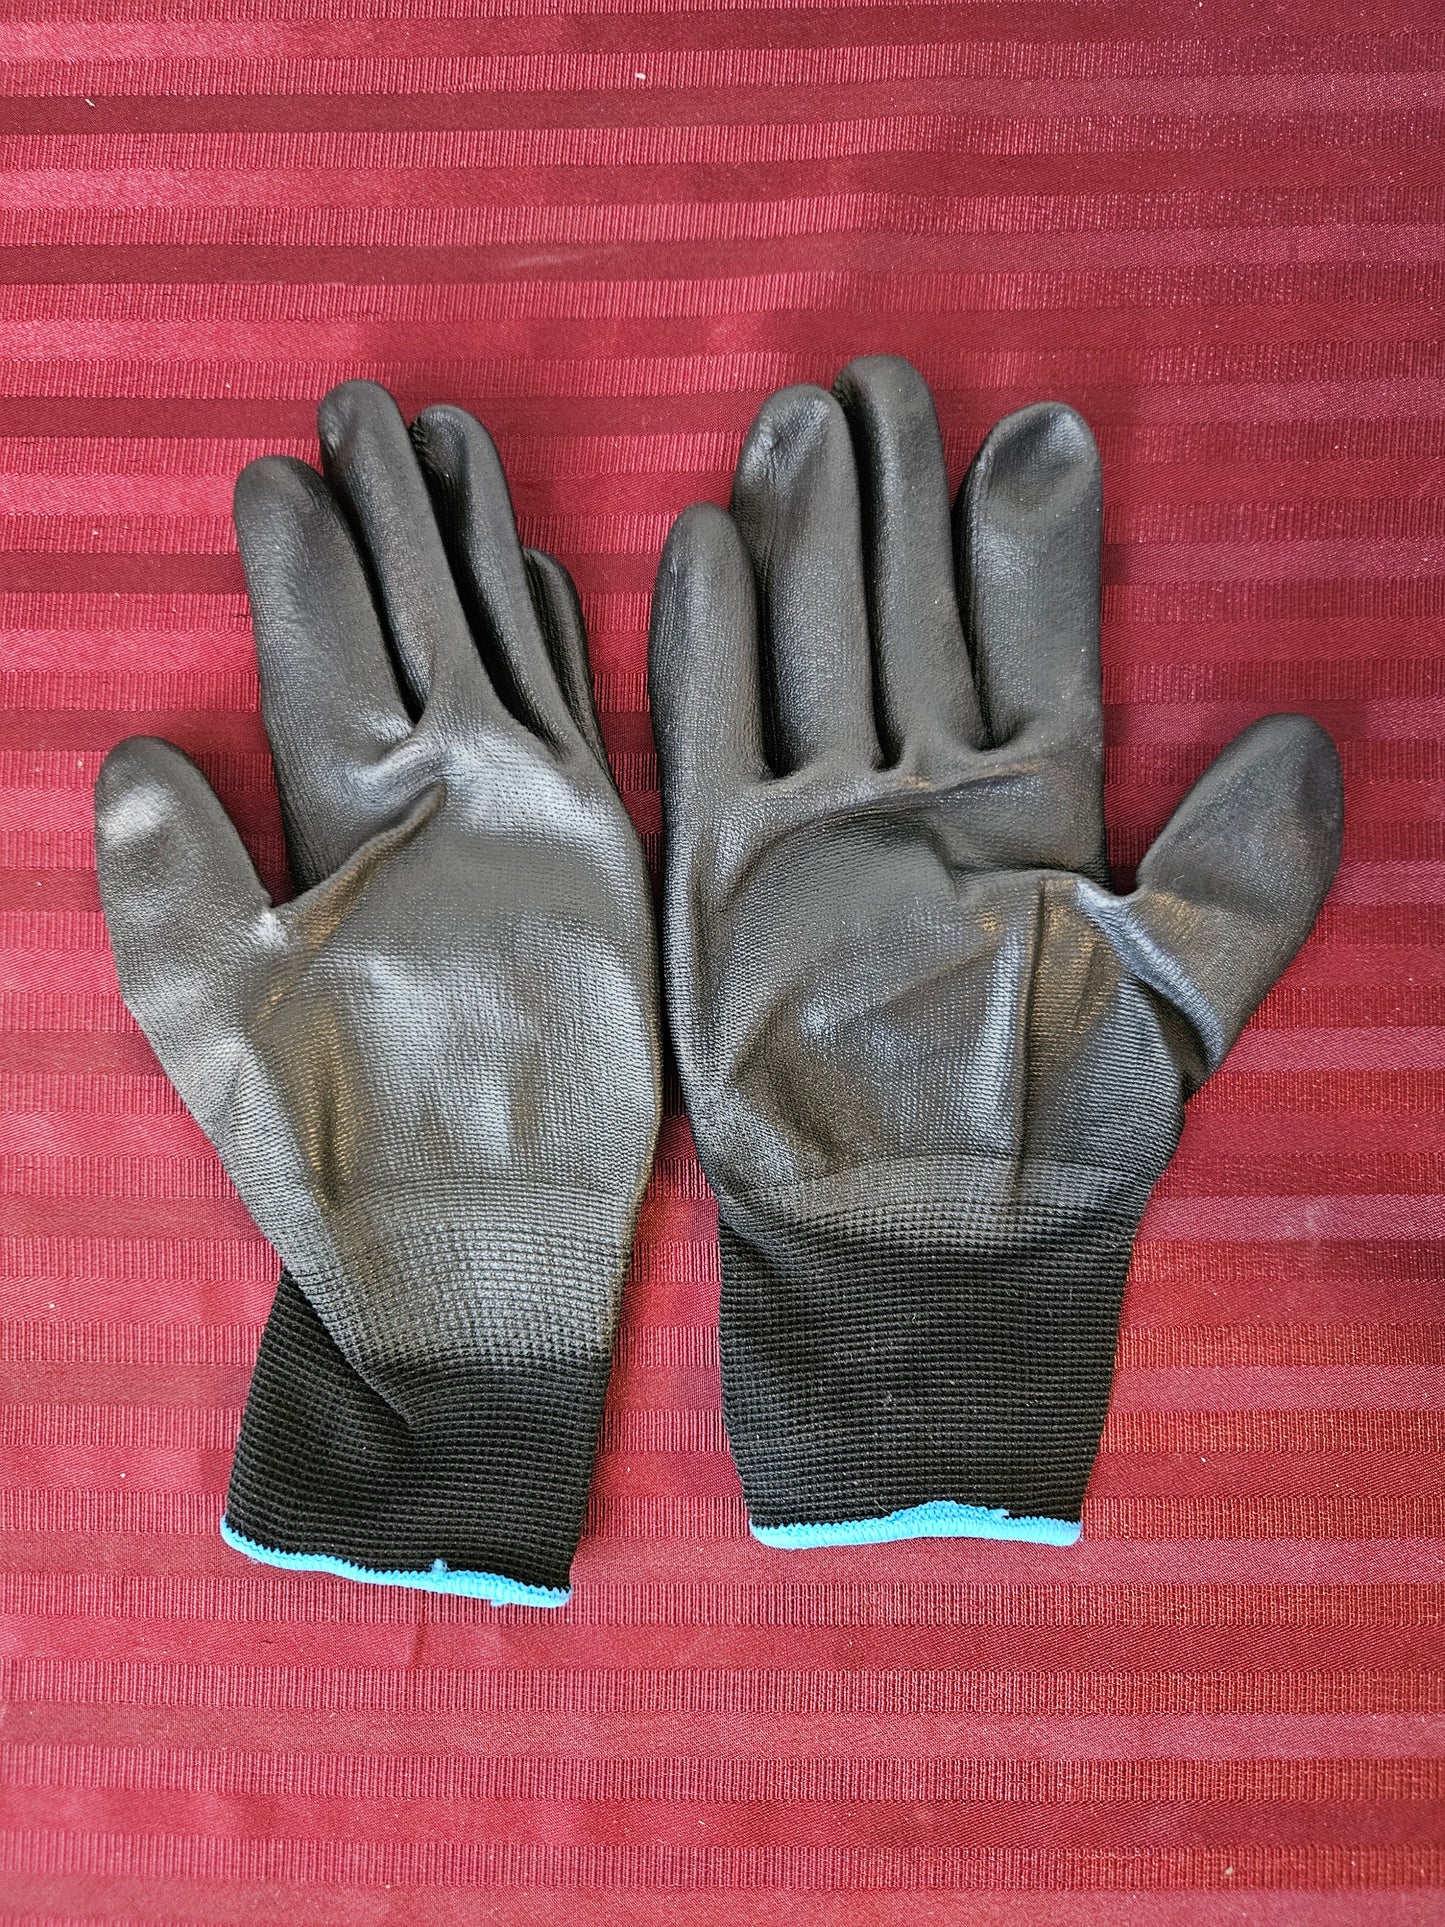 Par de guantes de trabajo de nylon (Talla L) - Gorilla Grip (Nuevo)